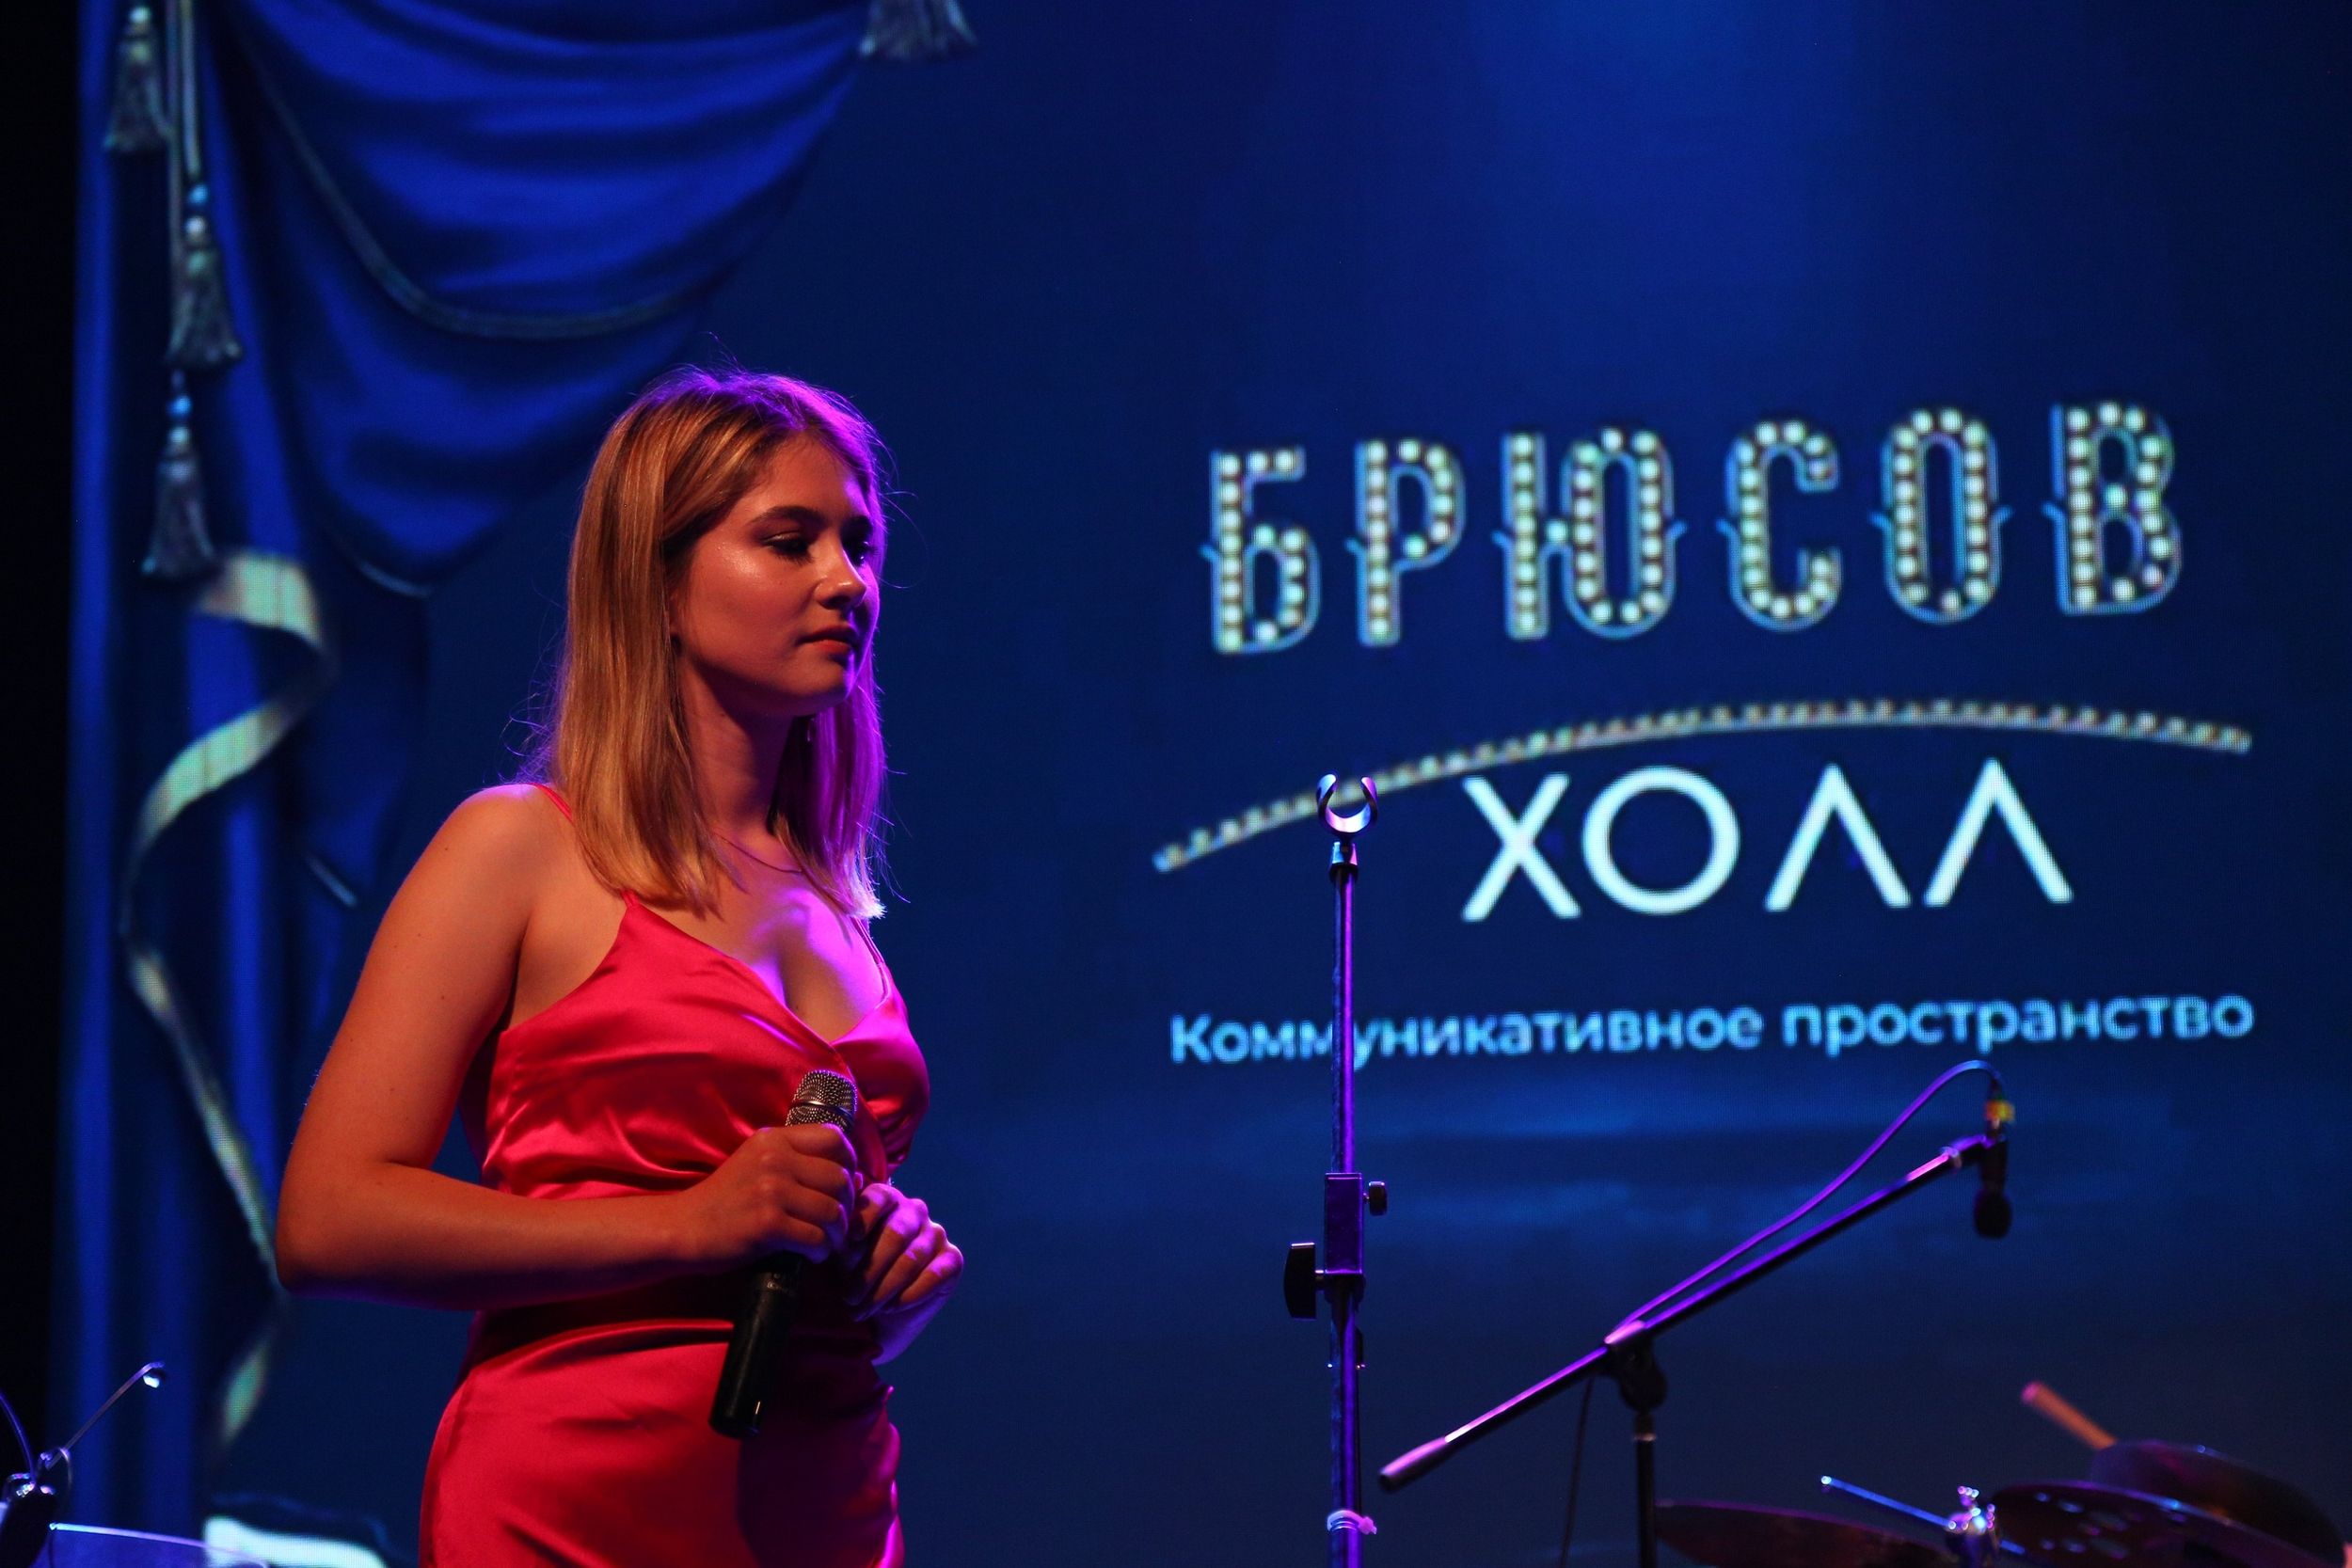 Арина Чеканова | Фото предоставлено пресс-службой «Академии современной музыки А. Белова и О. Кормухиной»